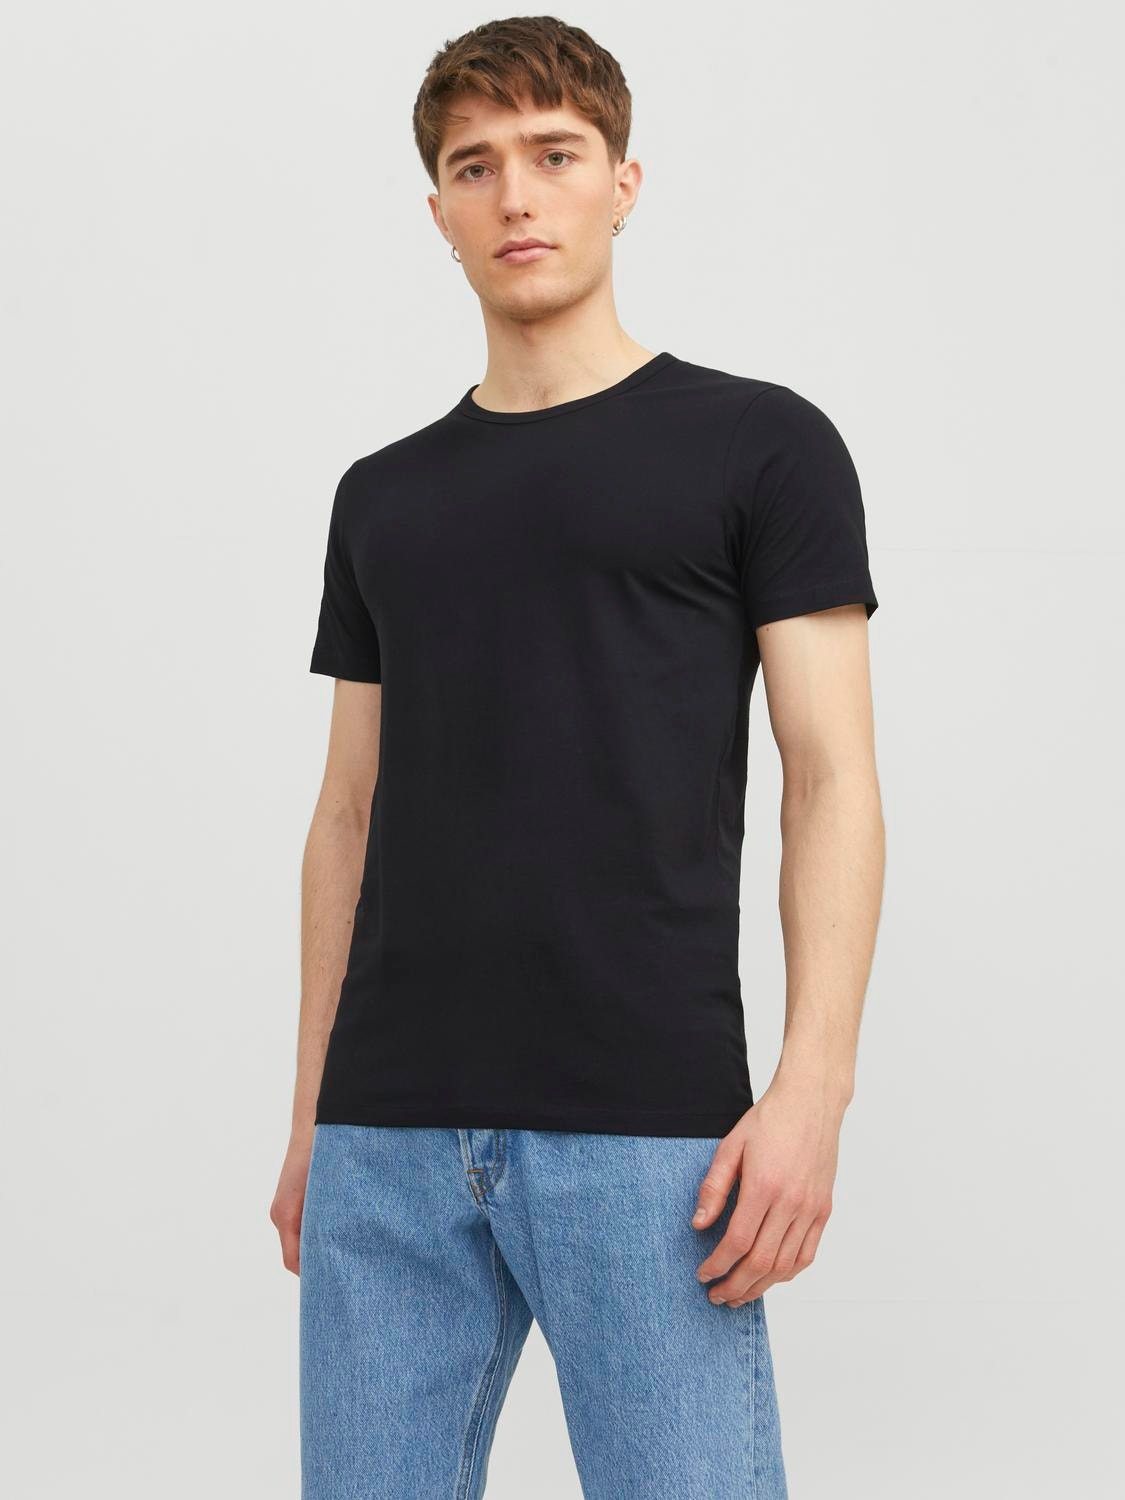 Jack & Jones Plain O-Neck T-shirt -Black - 12058529